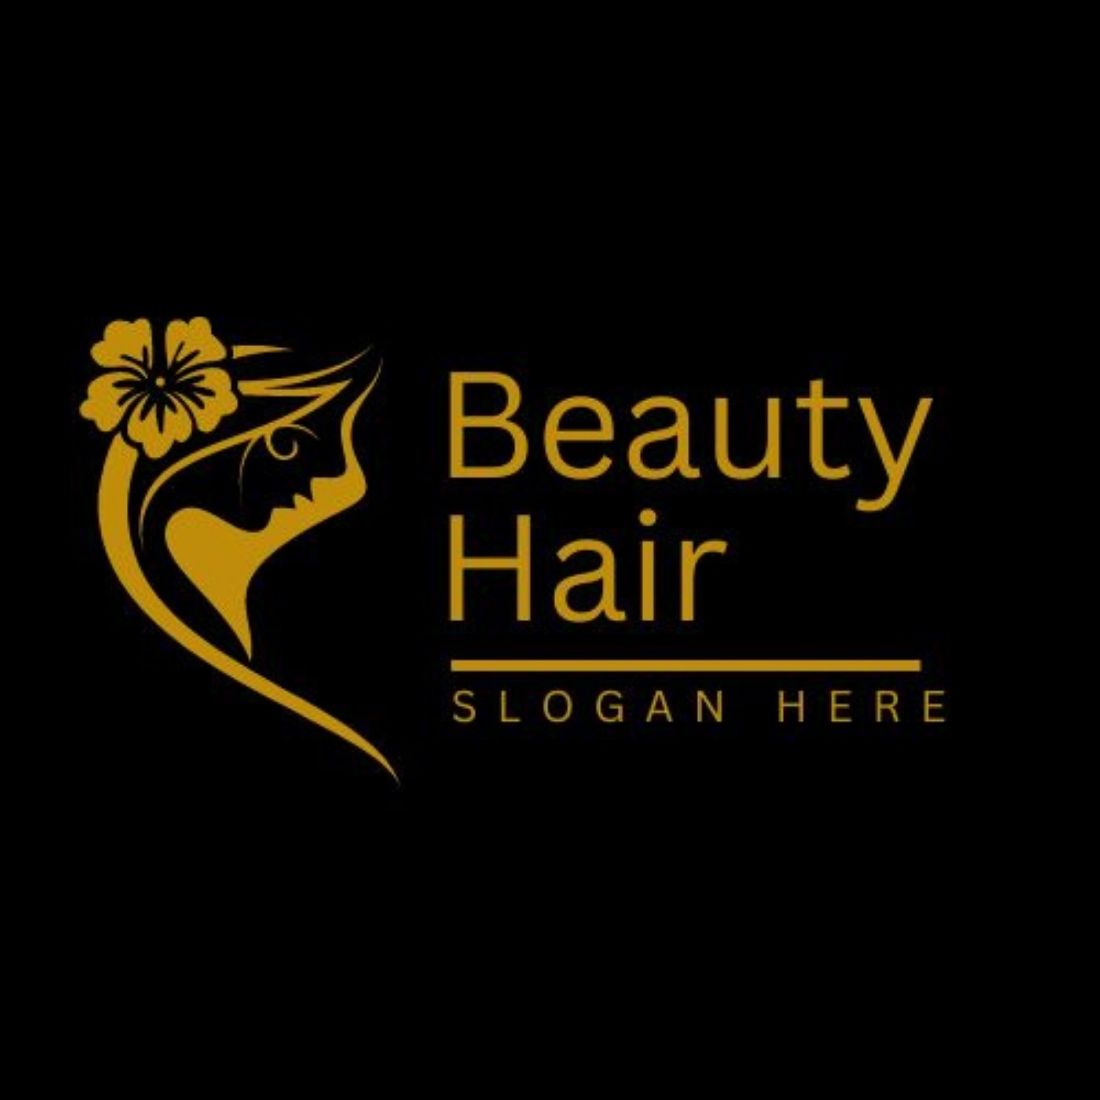 Editable Hair Salon Logo Templates (Canva) preview image.